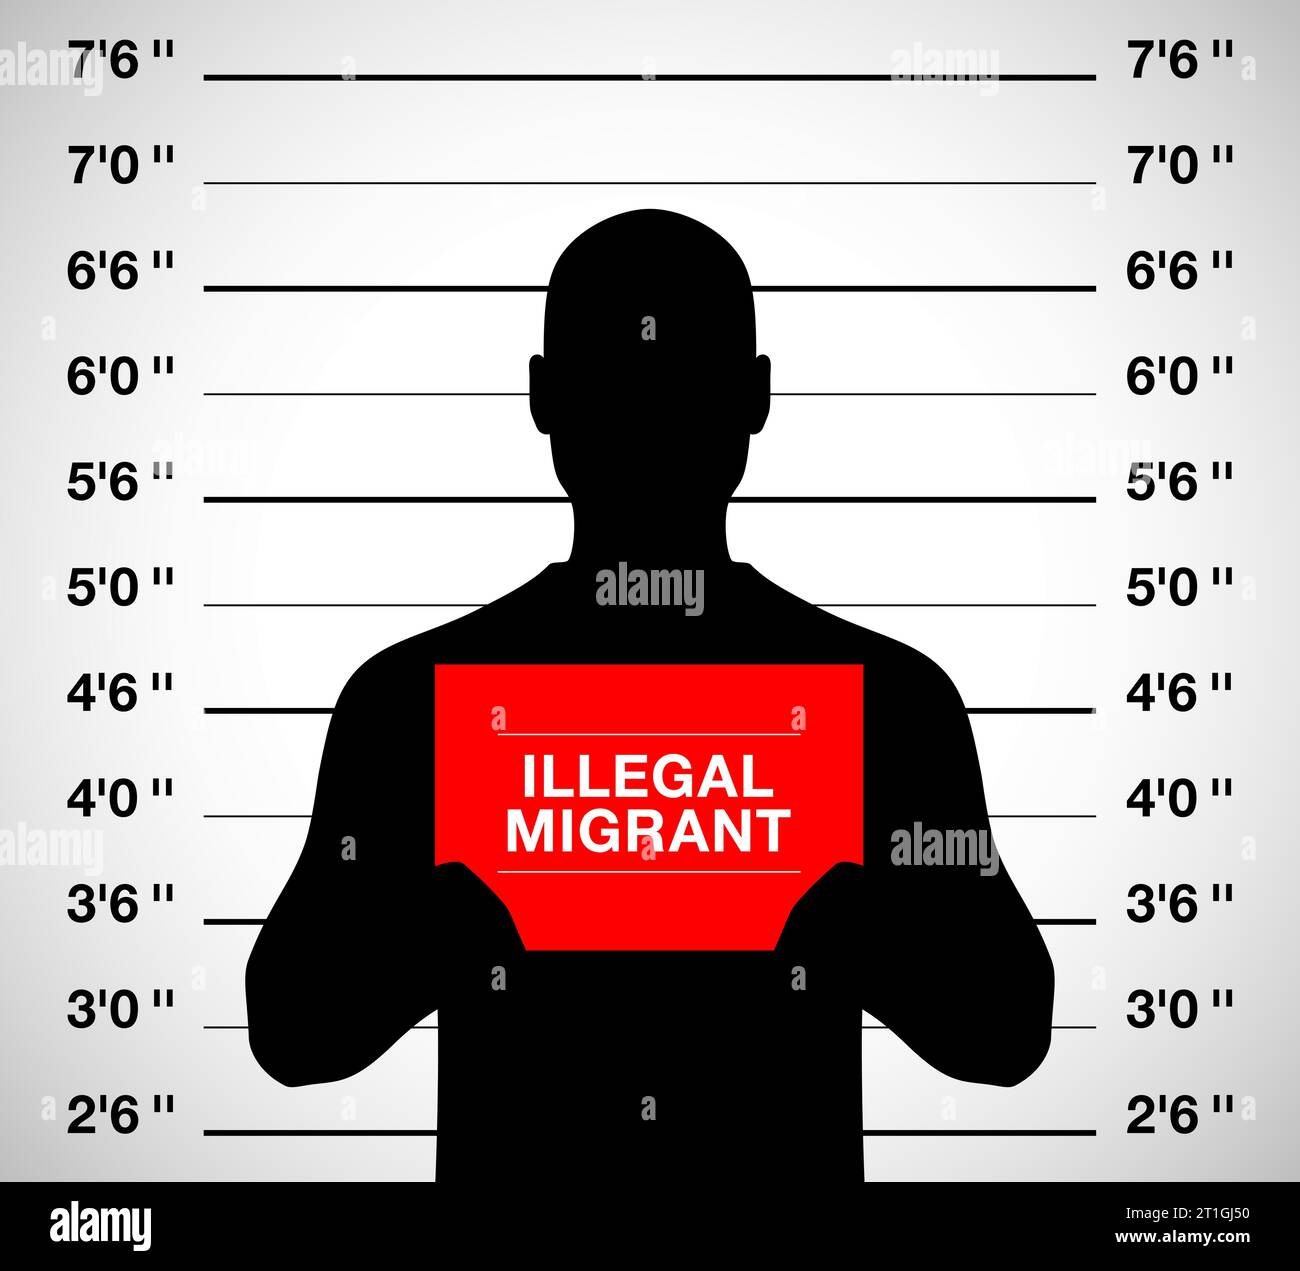 Homme migrant illégal debout sur un fond de prise de vue photo mugshot, illustration vectorielle. Illustration de Vecteur